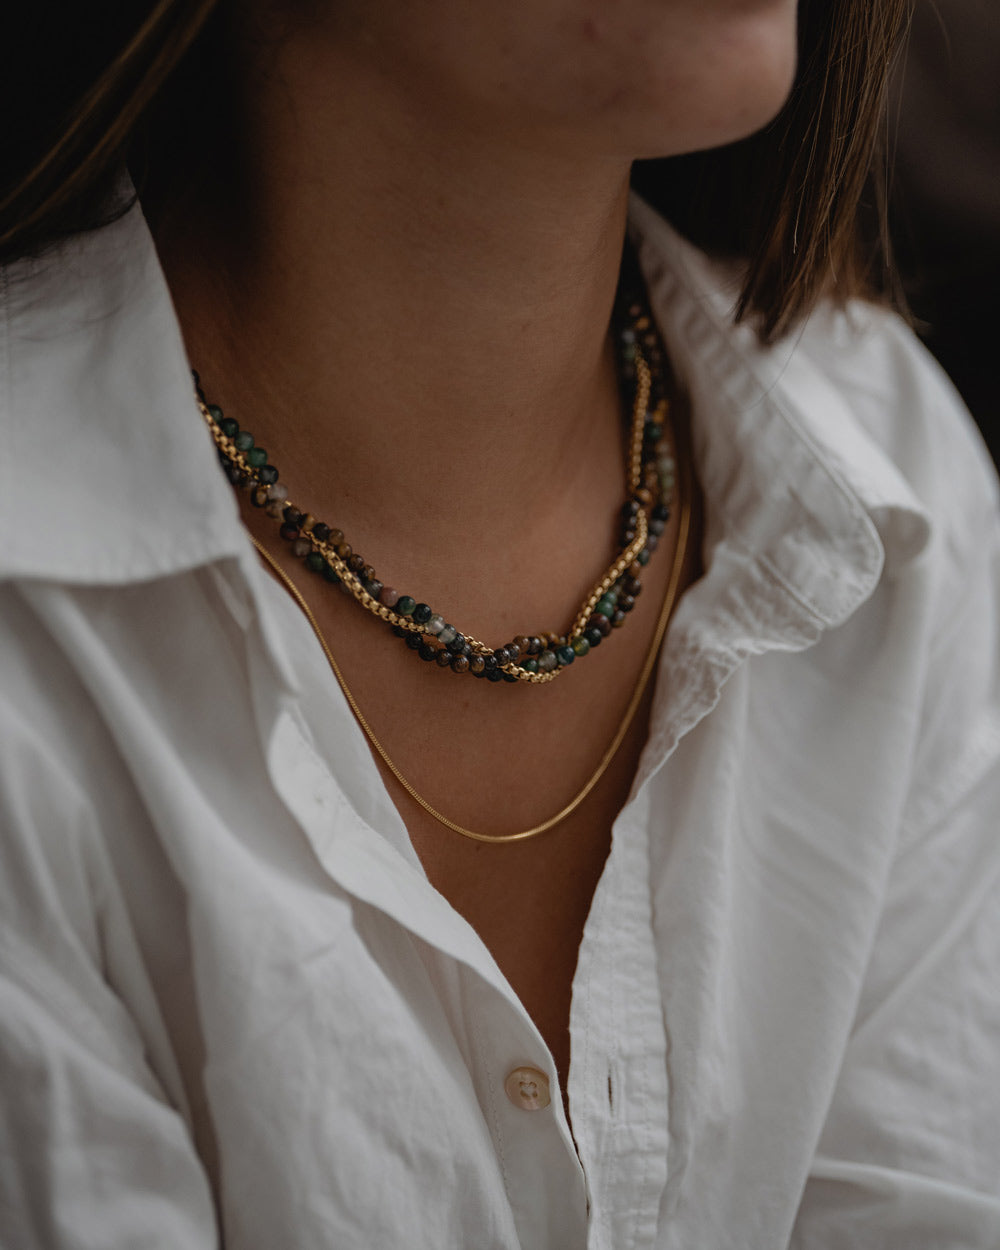 Cadena de Serpiente de Acero Inoxidable Dorado en el cuello del modelo - Cadenas de Acero Inoxidable - Joyería Unisexo Online - Dicci